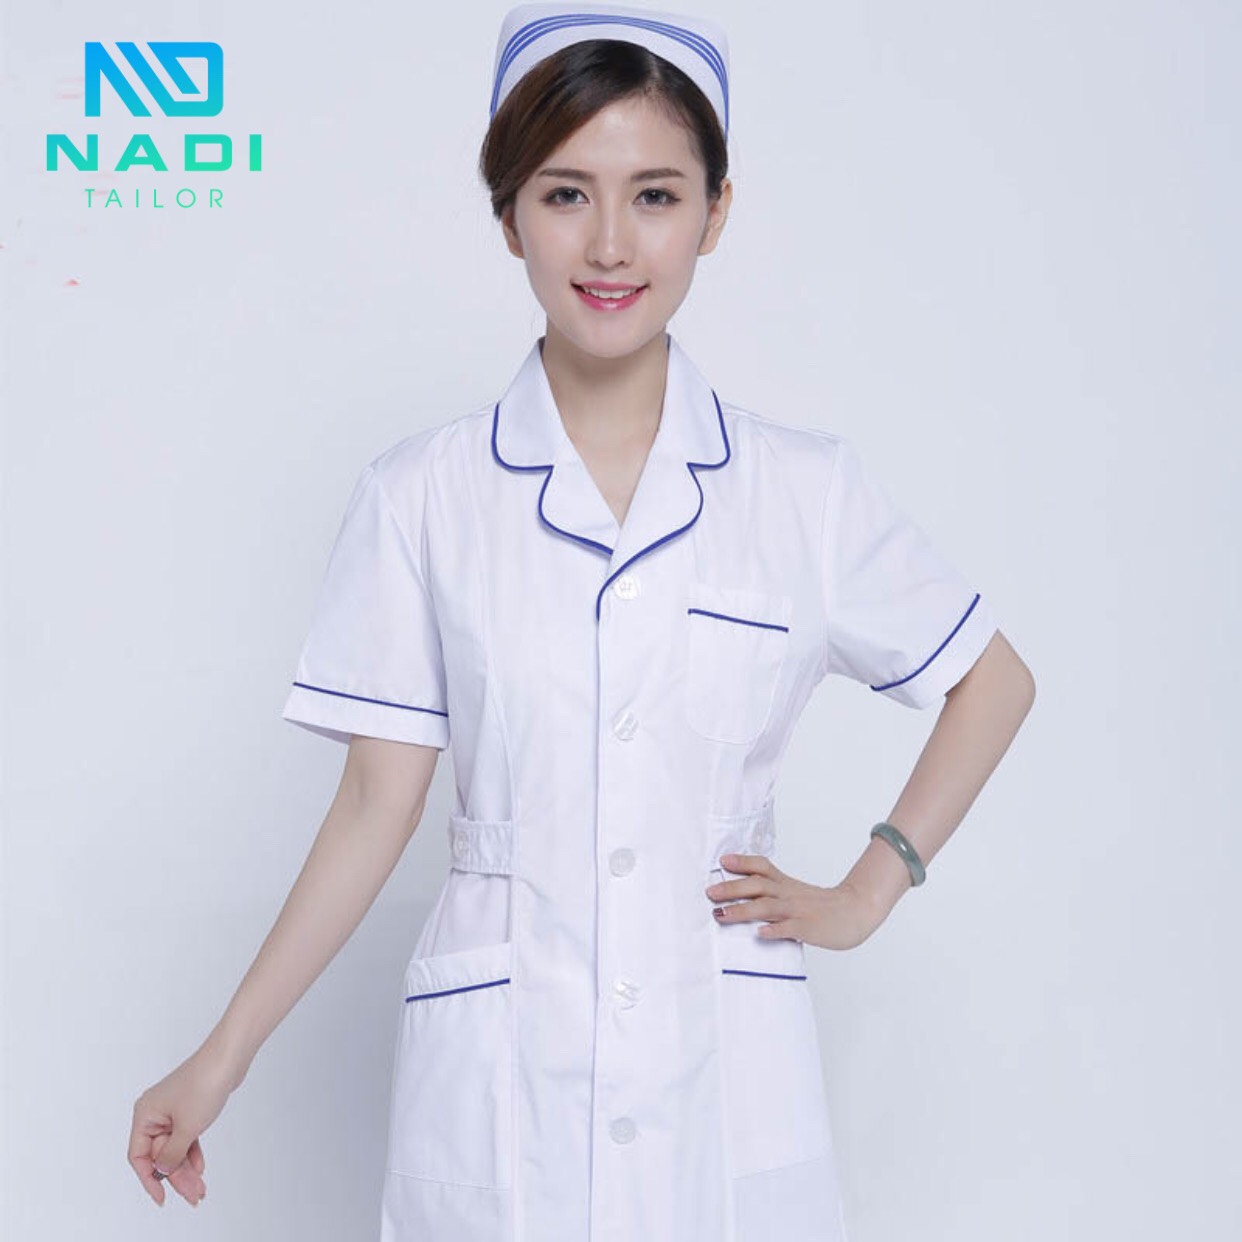 Đồng phục y tá điều dưỡng đẹp và sản phẩm vải chất lượng từ NADI